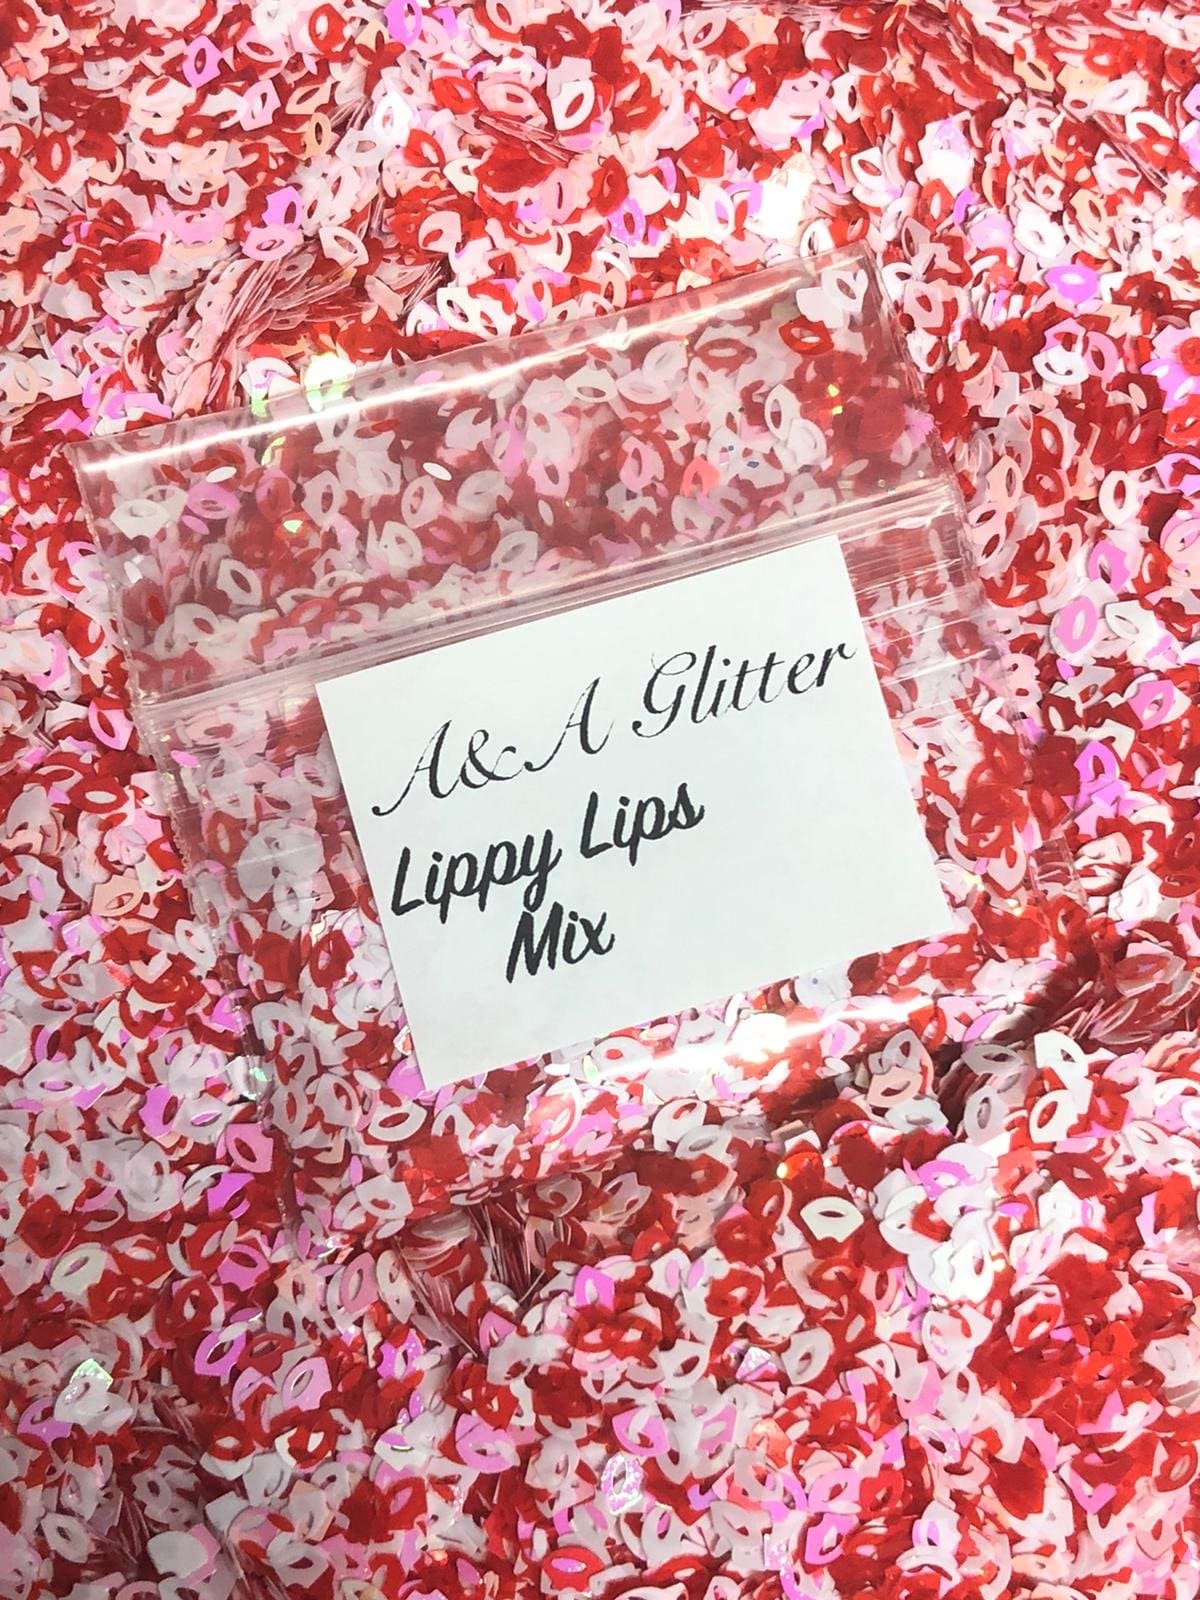 Lippy Lips Mix